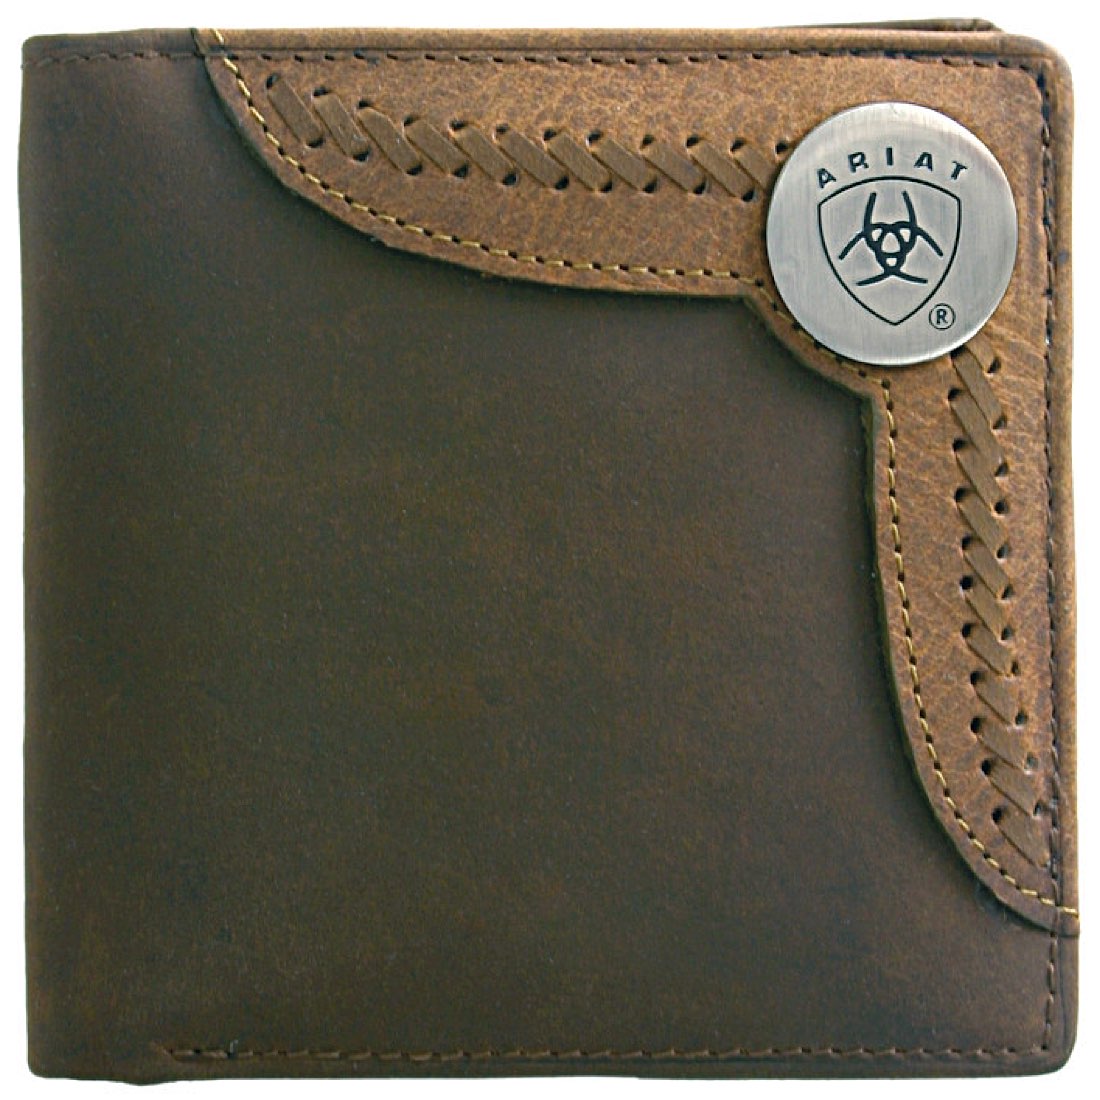 Ariat Bi Fold Wallet - Brown/Lite Tan WLT2103A